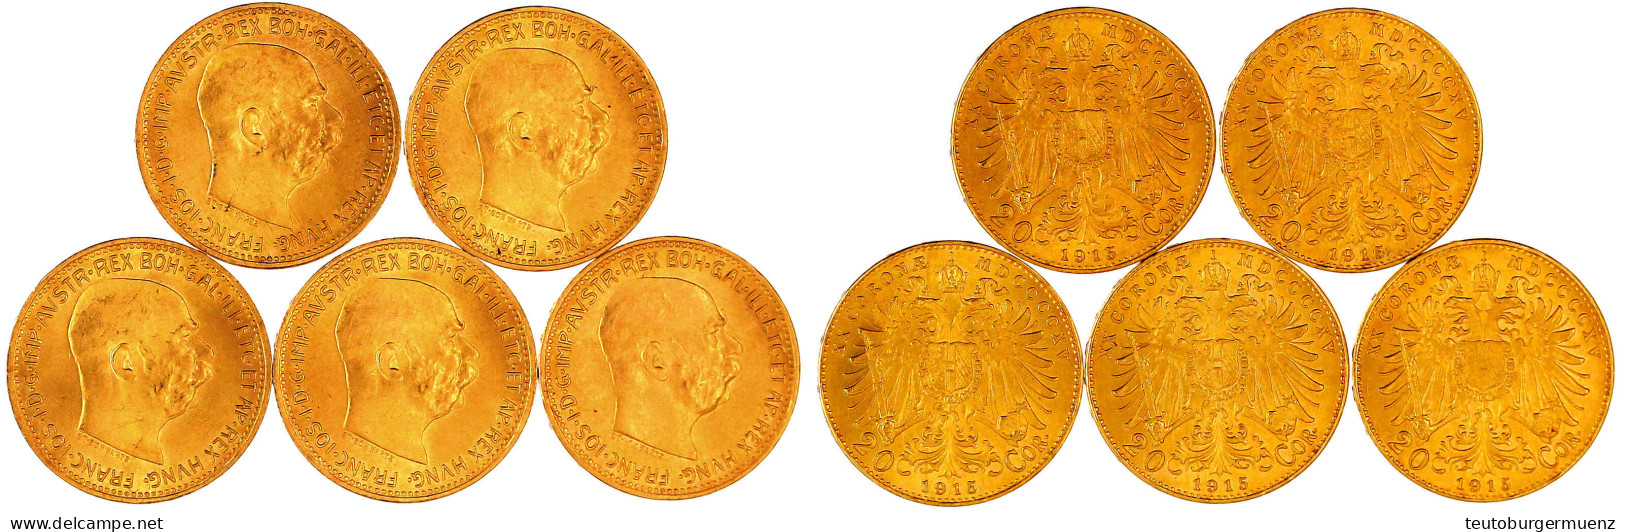 5 X 20 Kronen 1915, Offizielle NP. Je 6,78 G. 900/1000. Alle Prägefrisch/Stempelglanz. Herinek 350 (5). - Pièces De Monnaie D'or